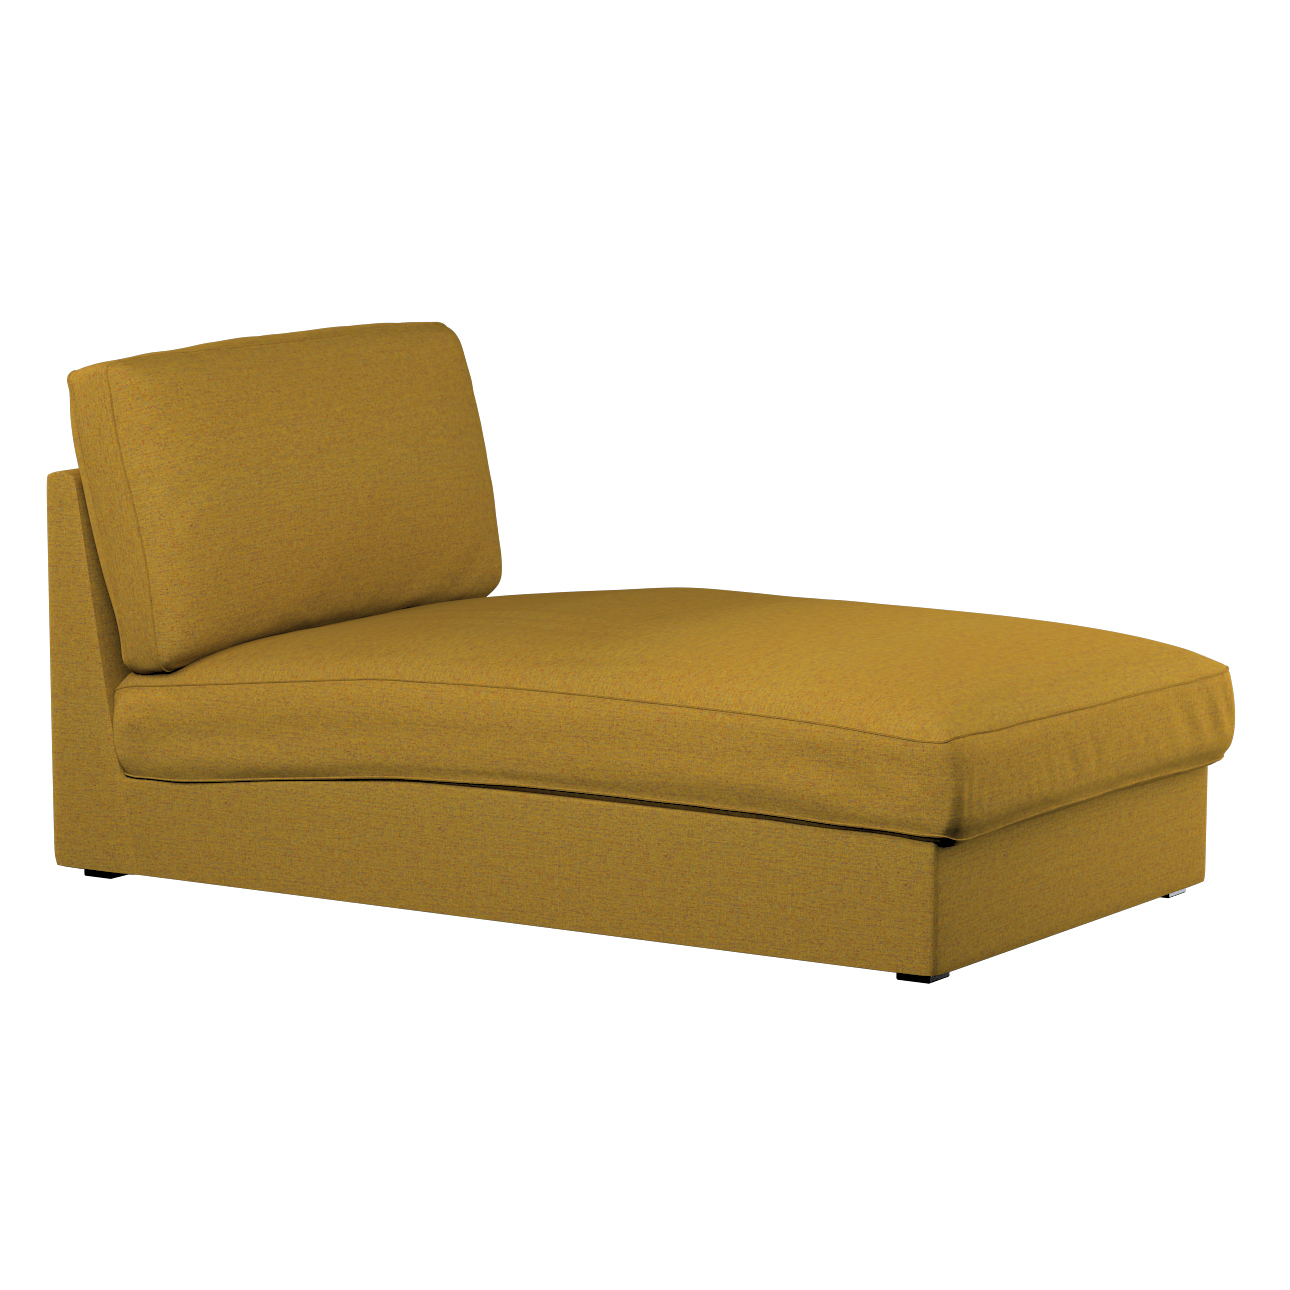 Bezug für Kivik Recamiere Sofa, gelb, Bezug für Kivik Recamiere, Madrid (16 günstig online kaufen